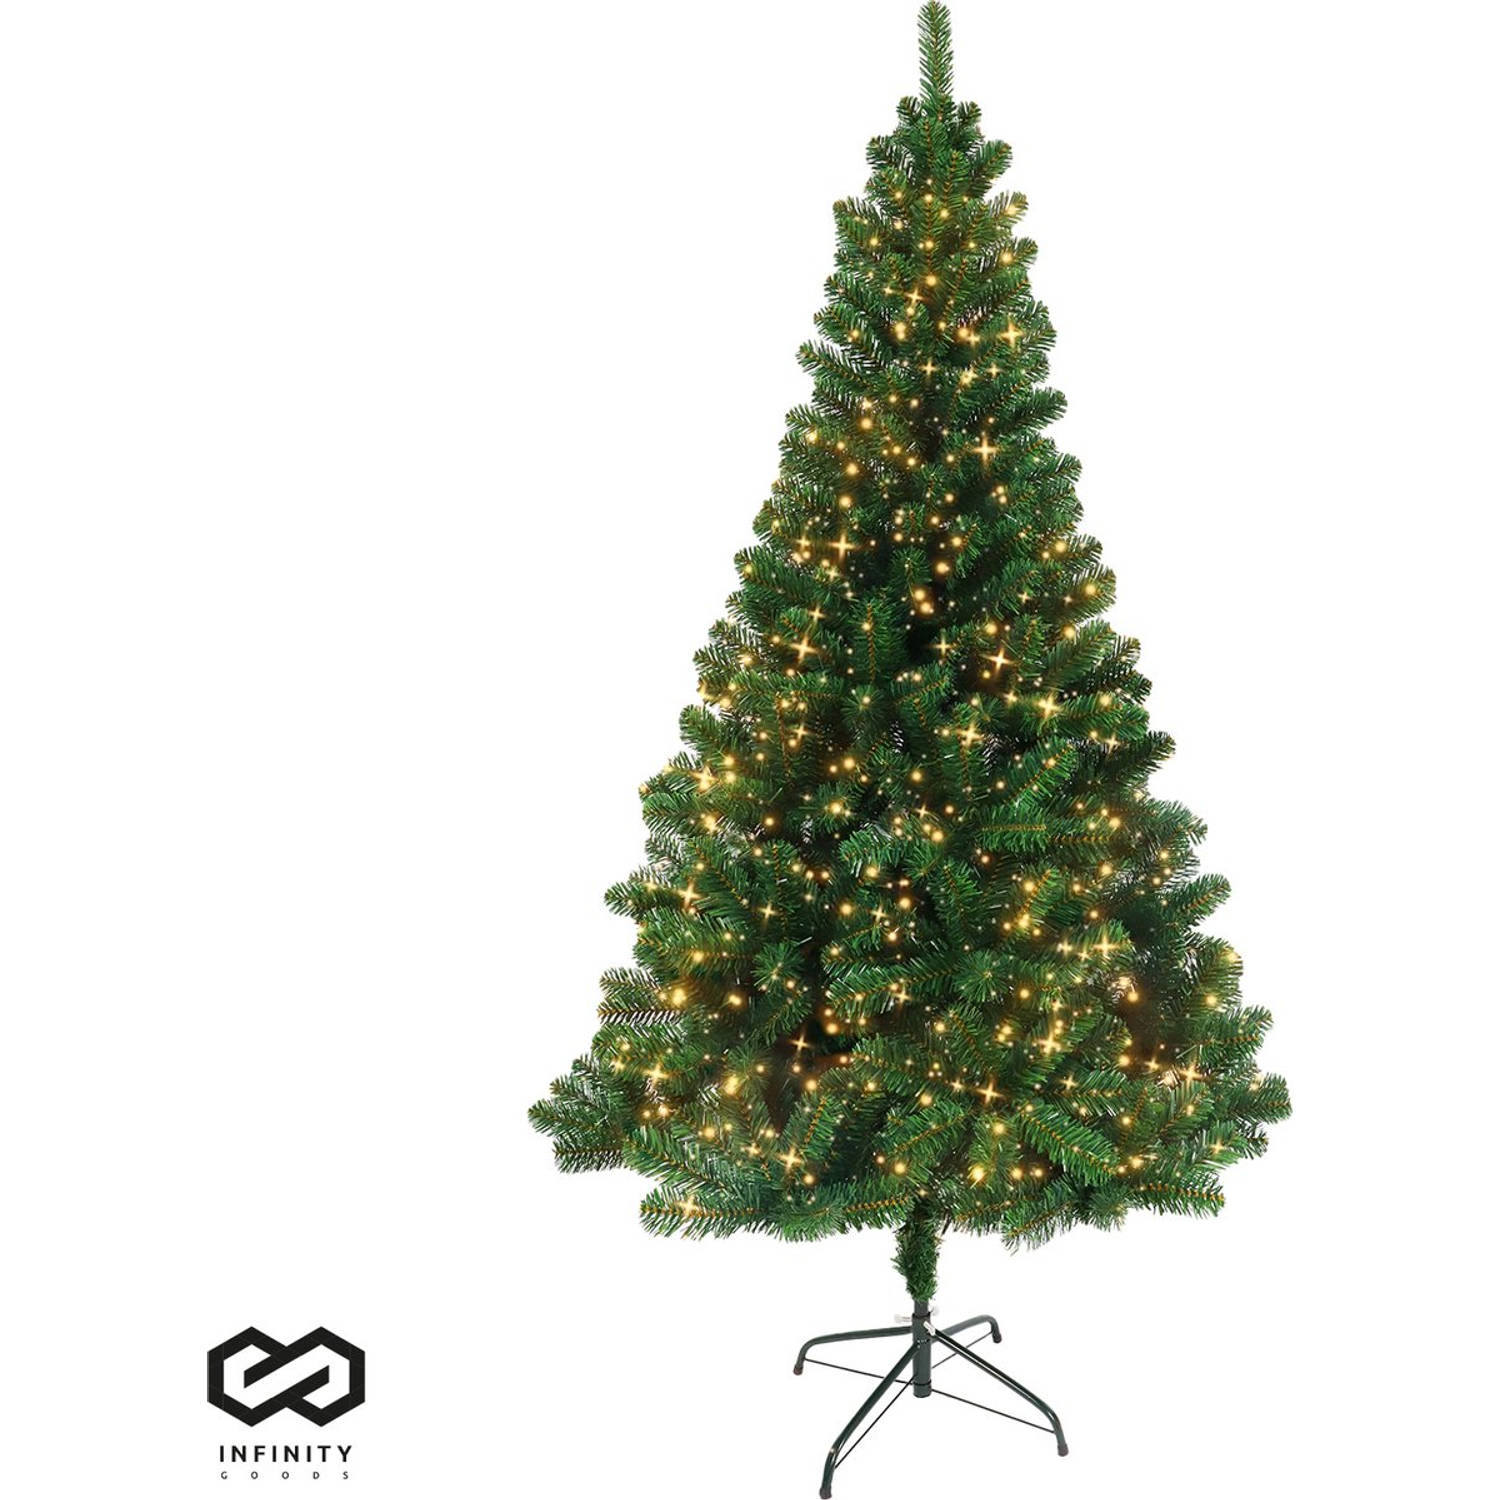 Infinity Goods Kunstkerstboom Met LED Verlichting 240 cm Realistische Kunststof Kerstboom Metalen St